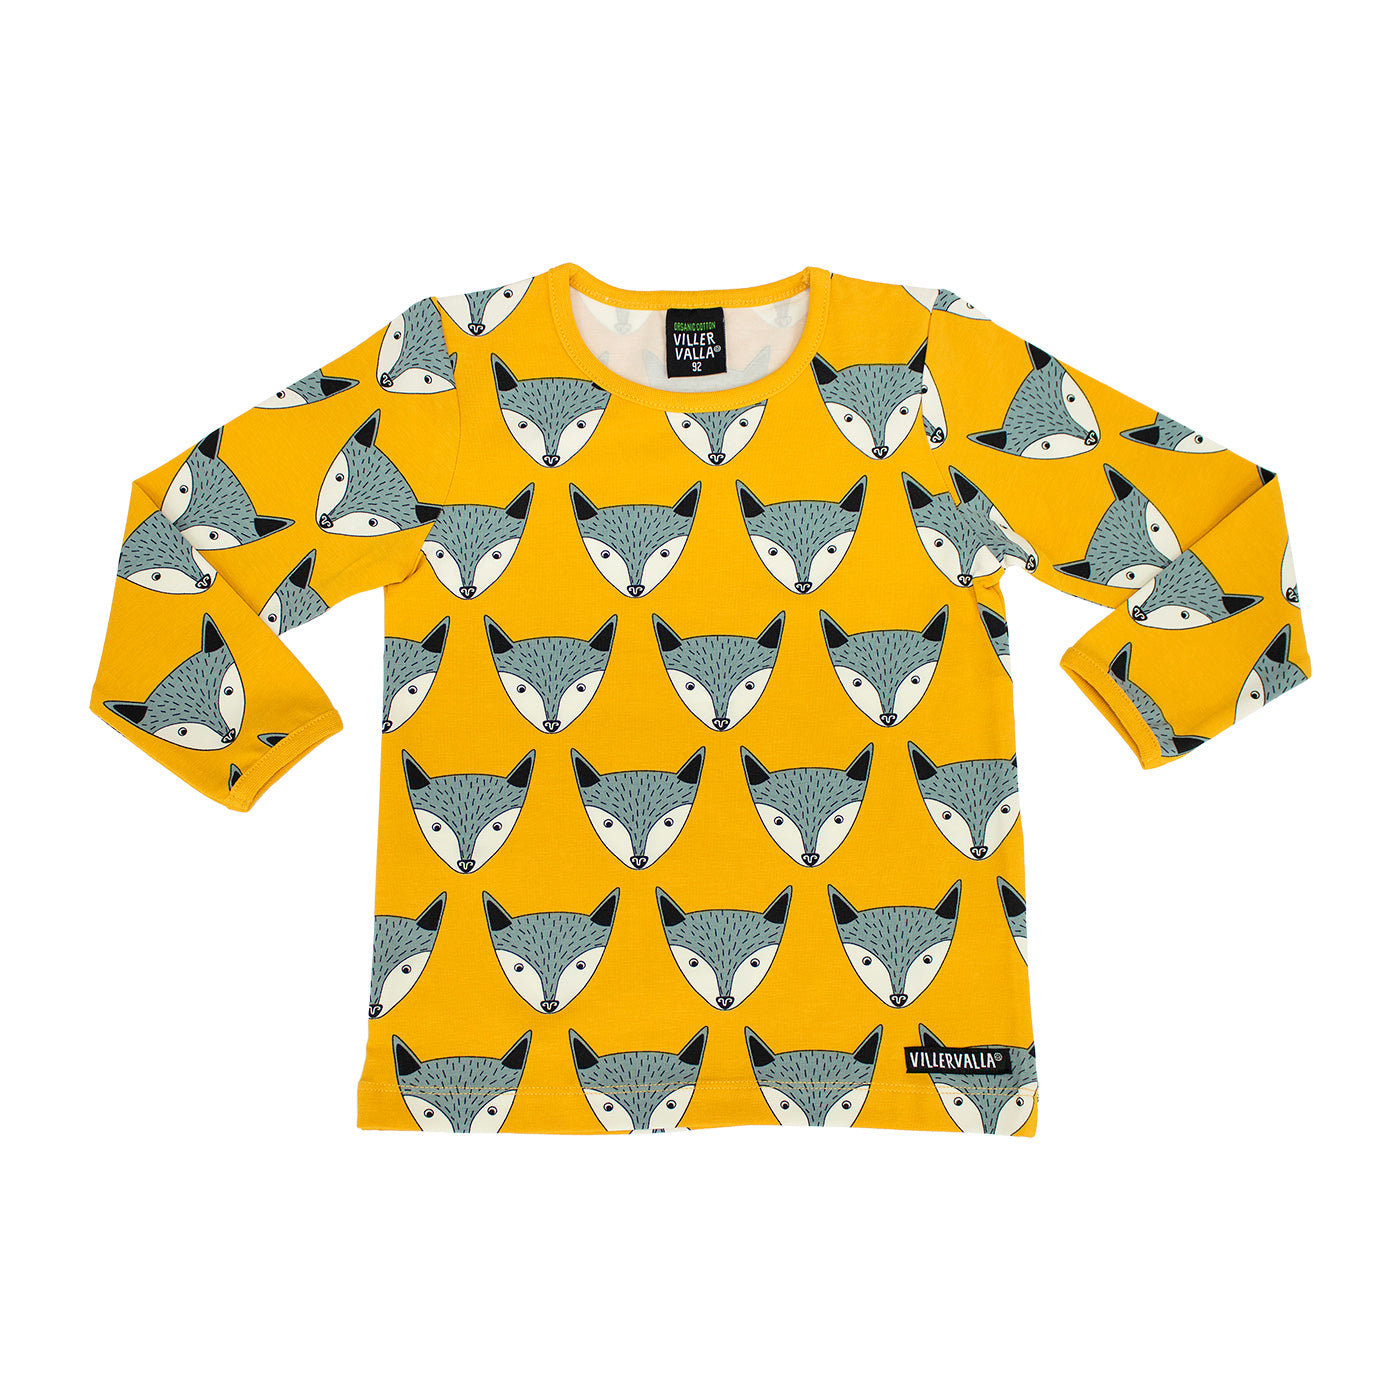 Villervalla - Longsleeve Fox Saffron - Shirt Vos Geel